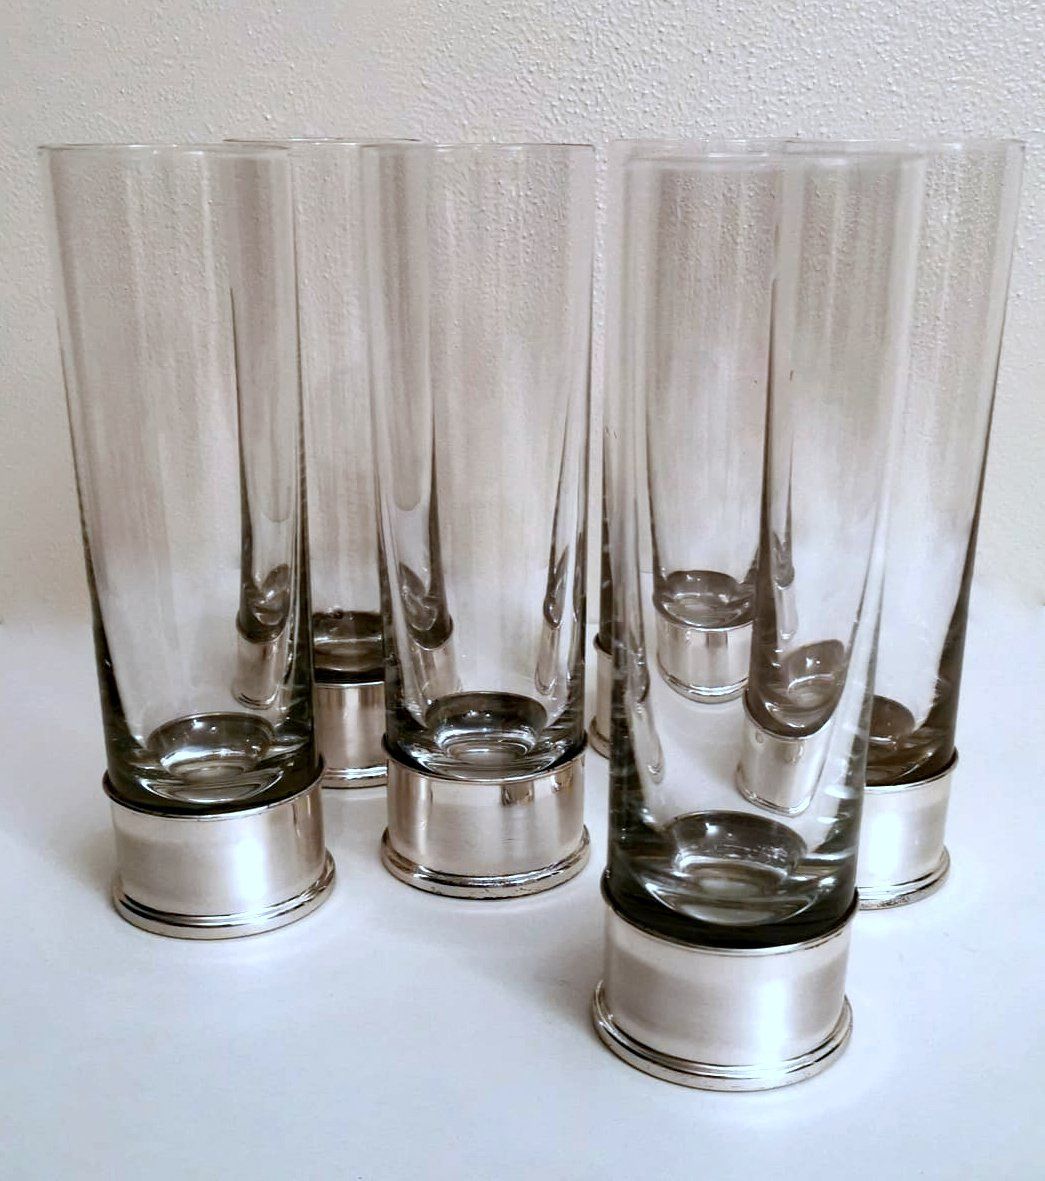 Vintage Italia RCR Crystal Wine Glasses Set of Four 